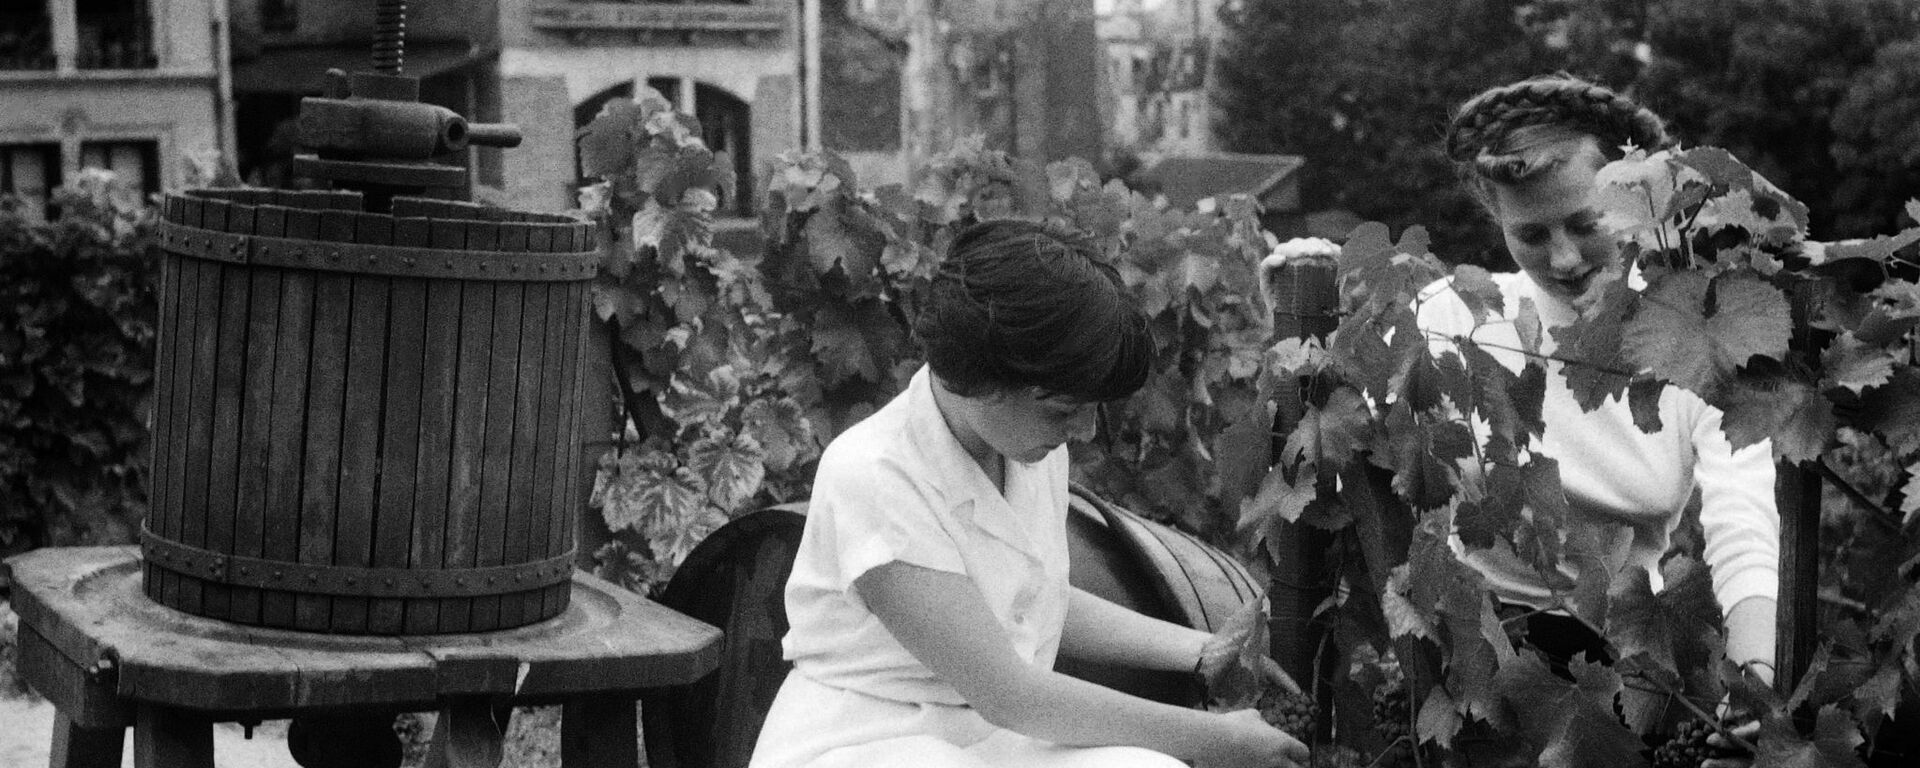 Mujeres cortando uvas para vino  - Sputnik Mundo, 1920, 14.02.2020